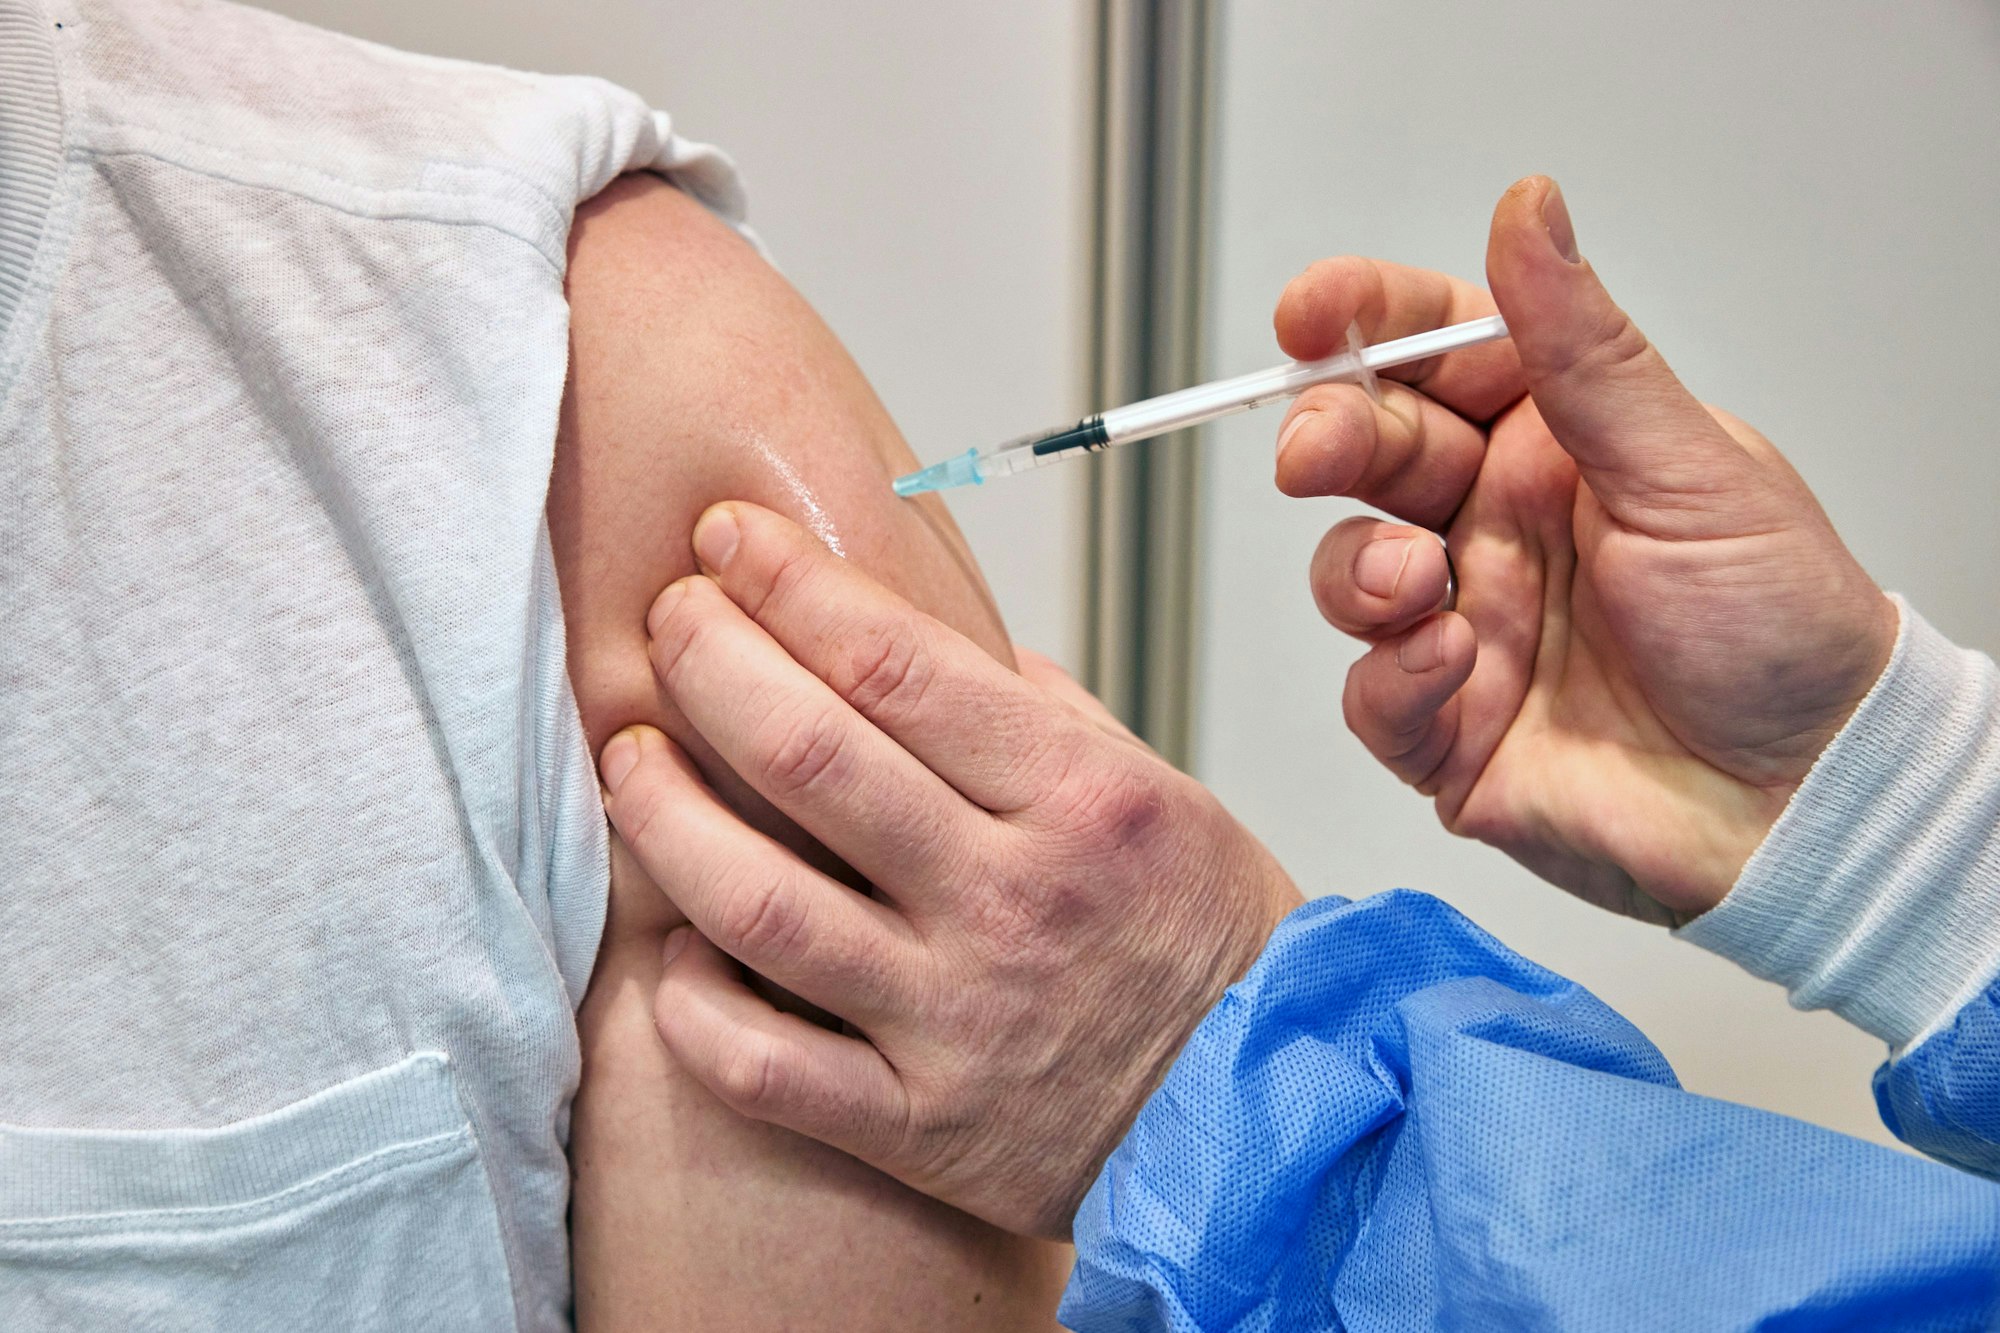 Ein Gesundheits-und Krankenpfleger verimpft in einem Impfzentrum einem Mann den Impfstoff Nuvaxovid des Pharmaunternehmens Novavax. Seit heute werden auch Corona-Impfungen mit dem neuen Impfstoff von Novavax angeboten.